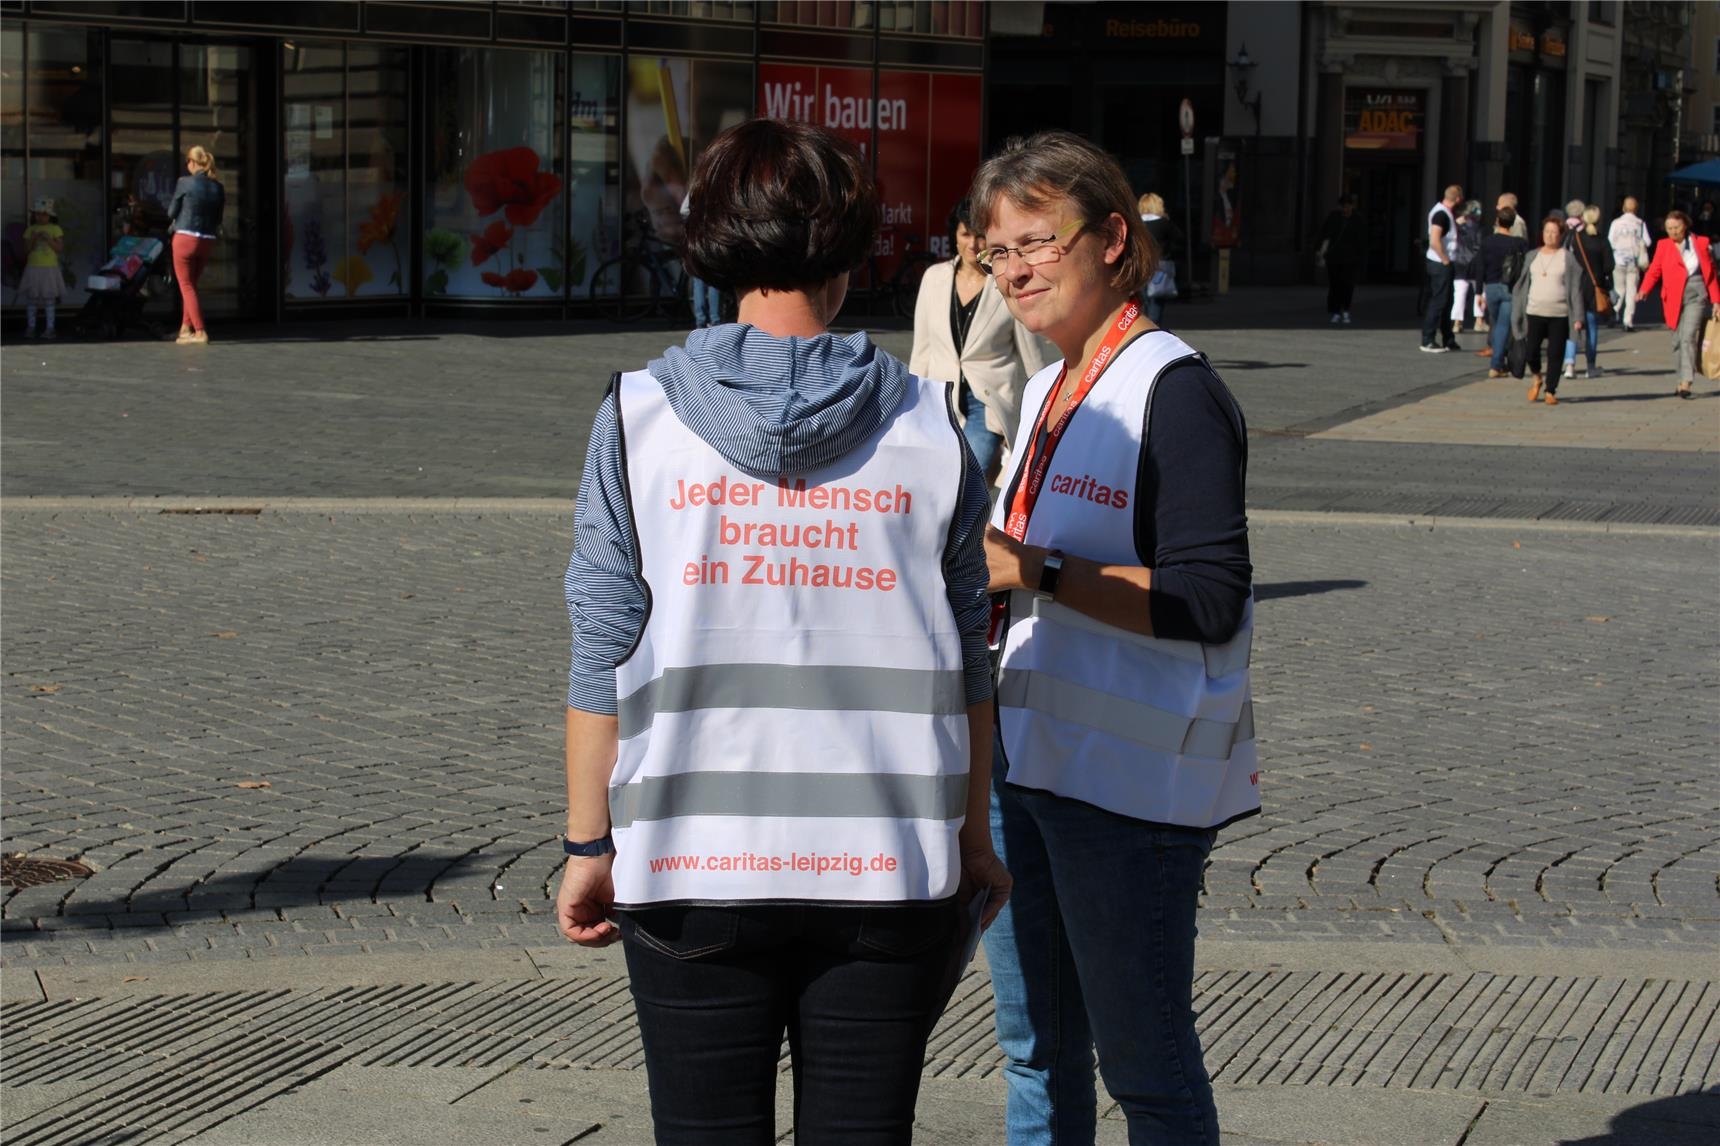 "Jeder Mensch braucht ein Zuhause" - Kampagne des Deutschen Caritasverbandes (c) Nina Draxlbauer)